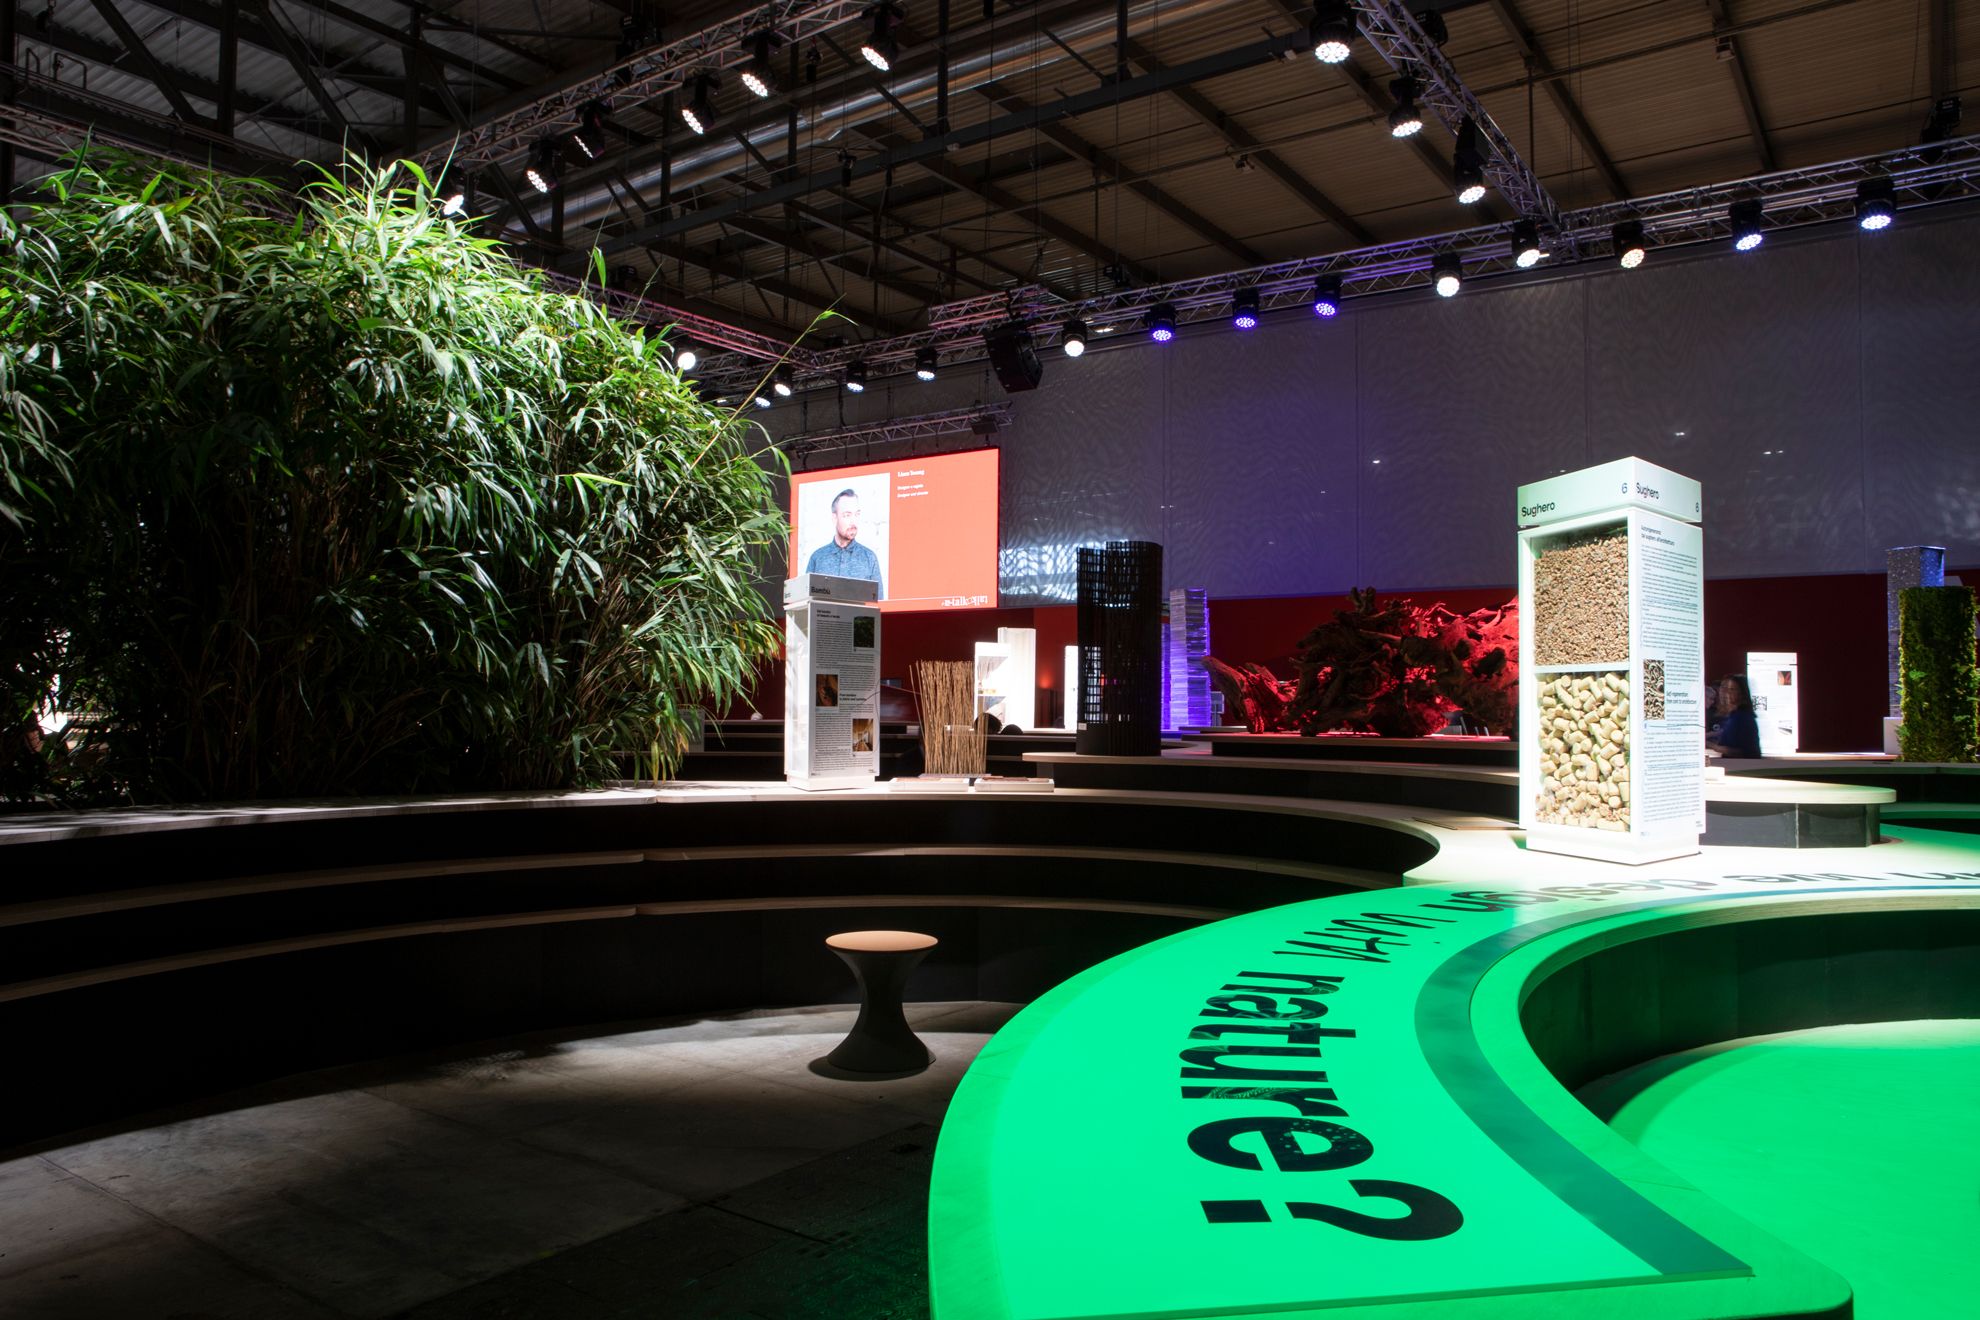 Area innovazione e sostenibilità Salone del Mobile 2022